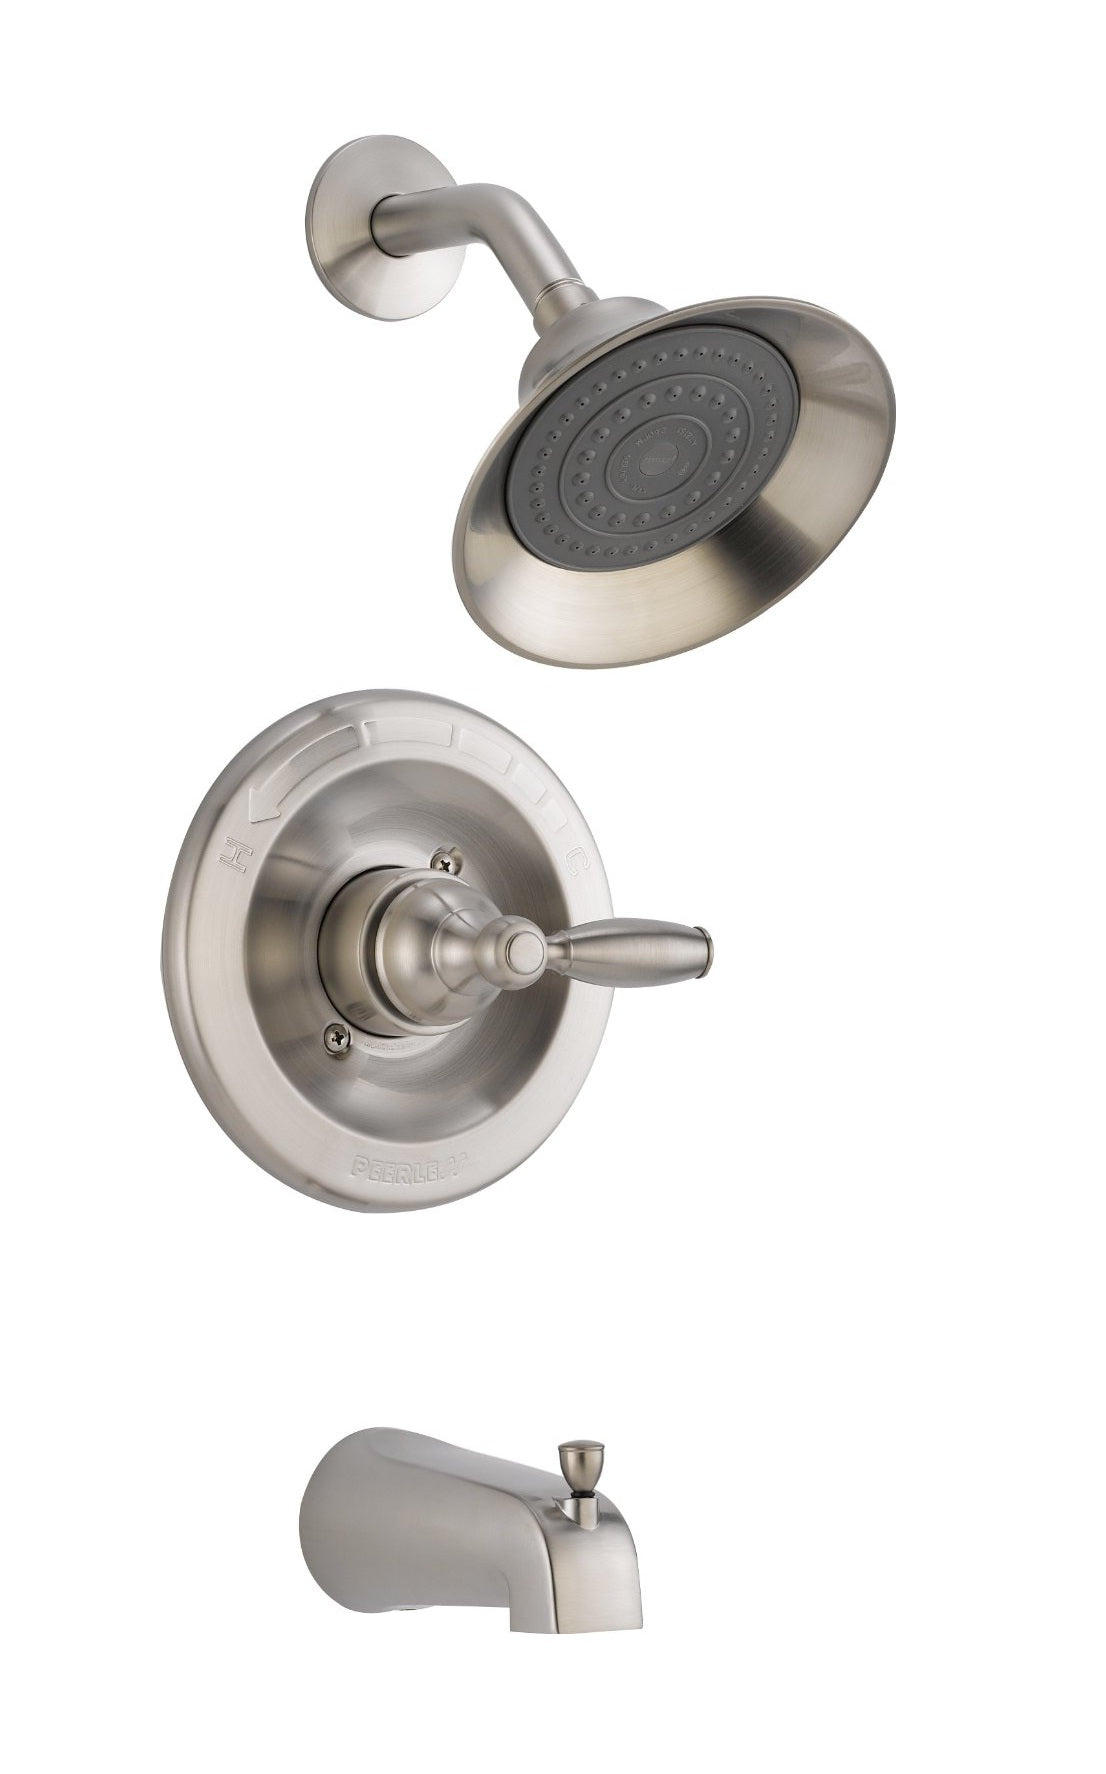 Peerless P188775-bn Single-handle Tub & Shower Faucet, Brushed Nickel